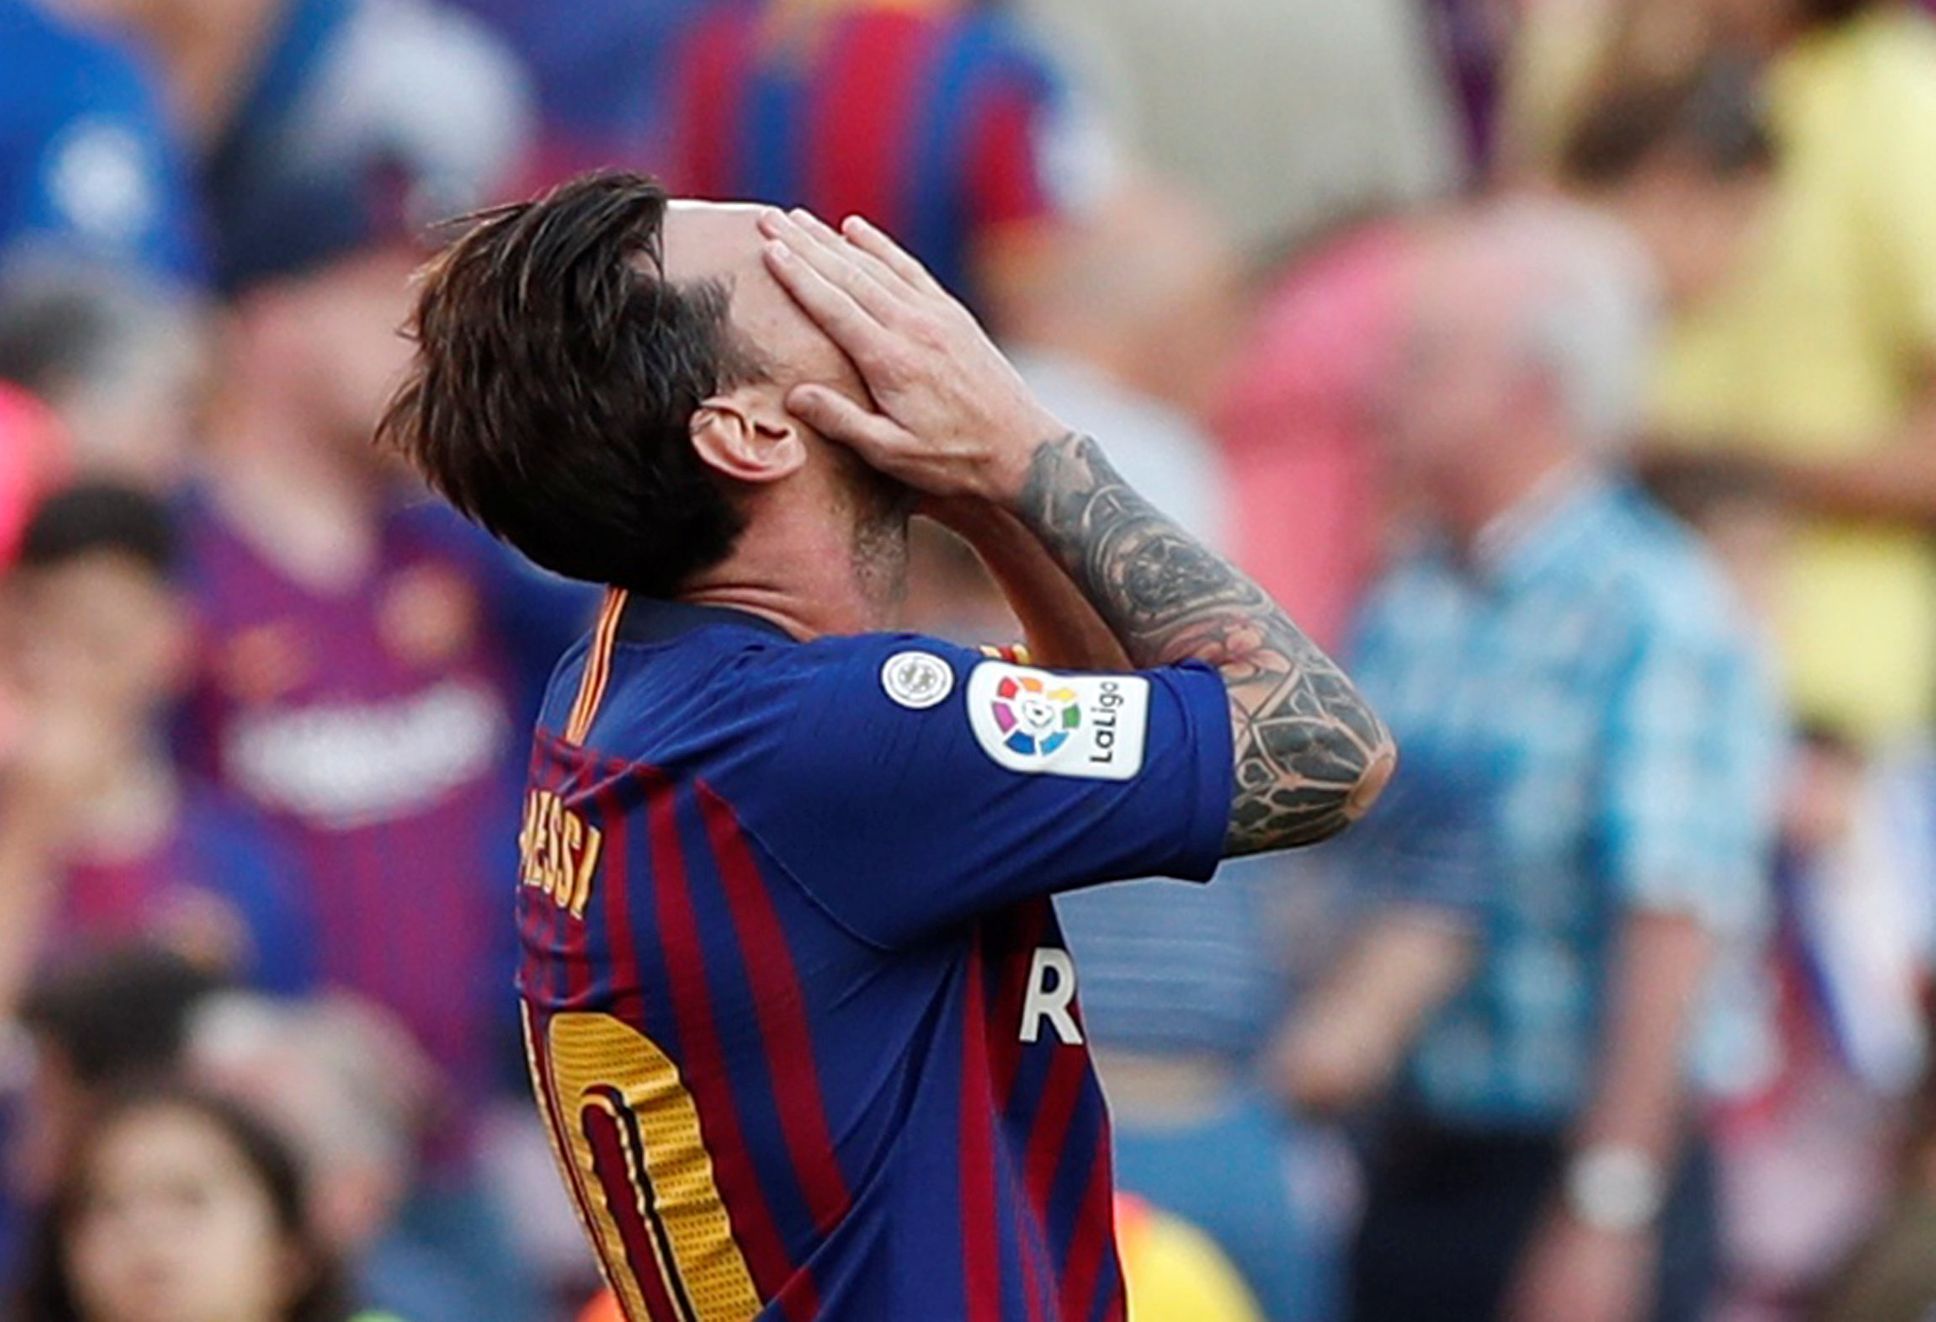 7. kolo španělské La Ligy 2018/19, Barcelona - Bilbao: Lionel Messi